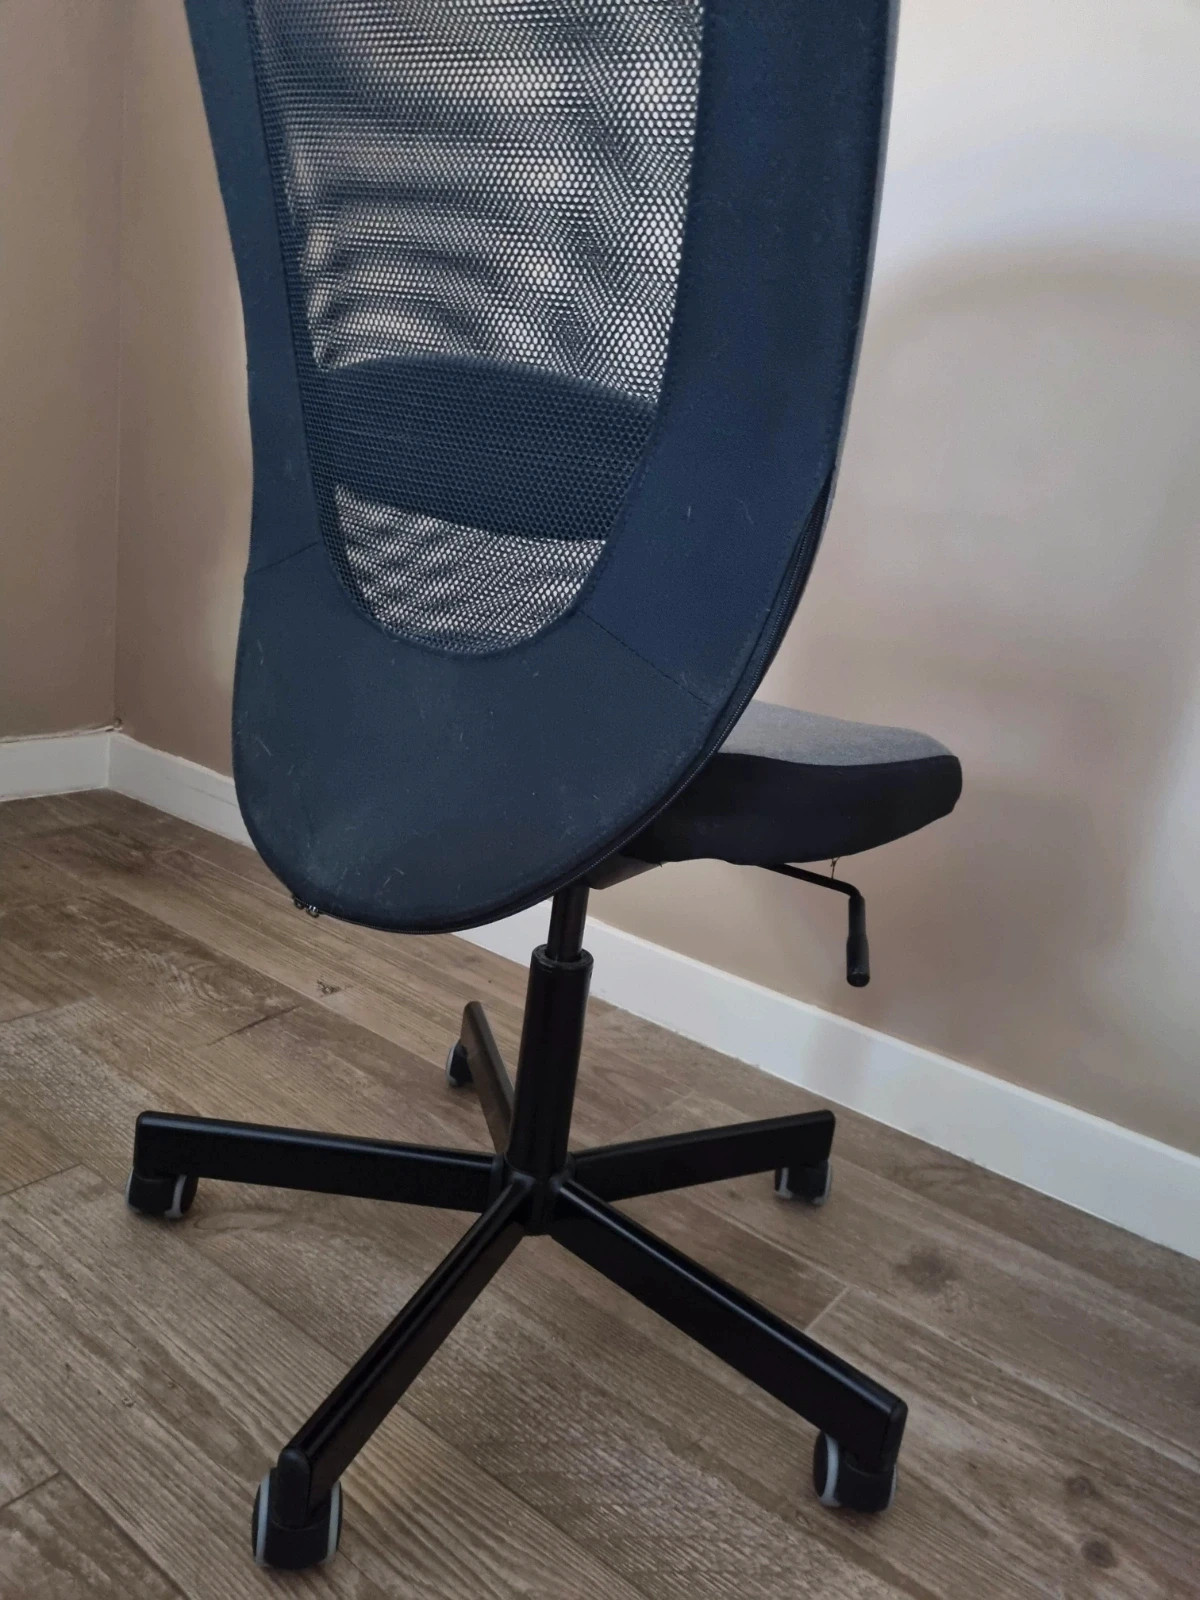 Comment réparer une chaise de bureau qui descend ?